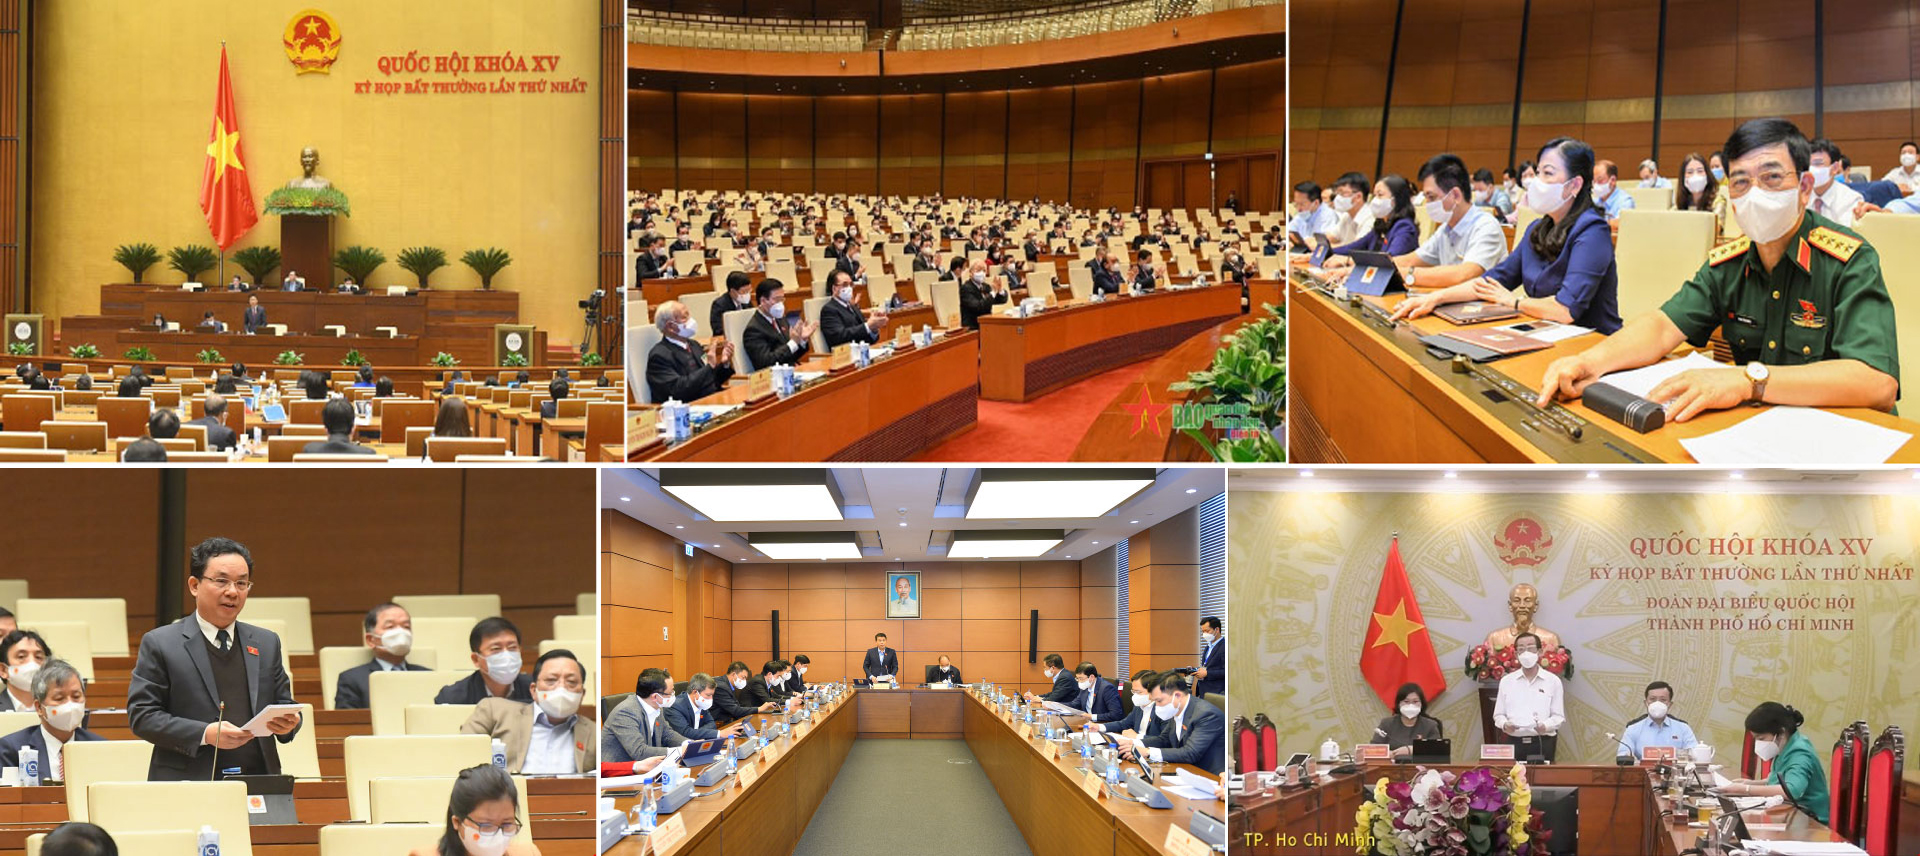 Các kỳ họp bất thường của Quốc hội: Vì quốc kế dân sinh, vì sự phát triển của đất nước